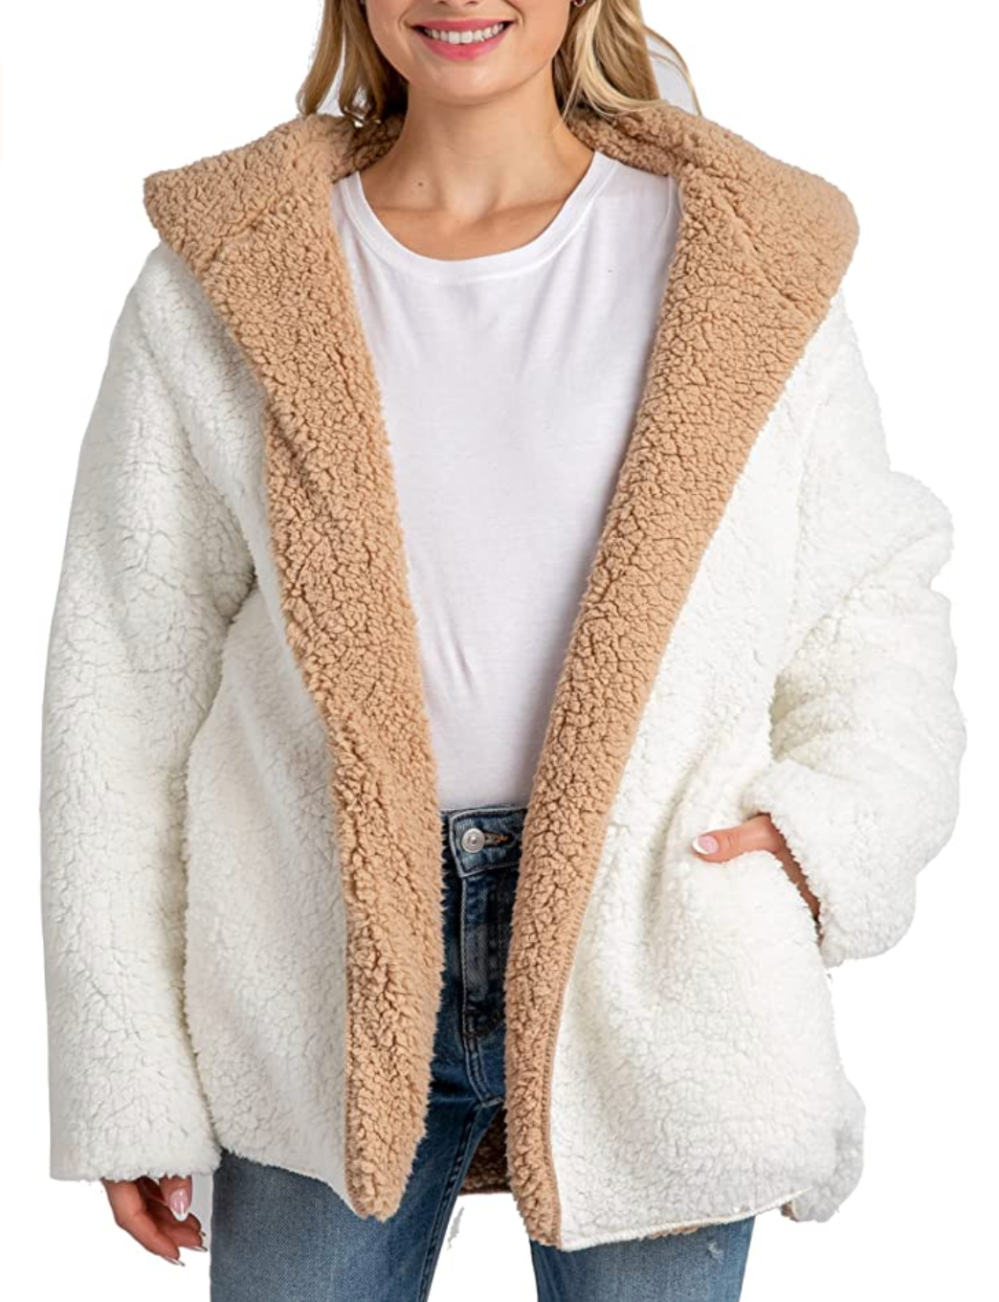 Oversized Sherpa Jacket for Women Men Fuzzy Fleece Teddy Bear